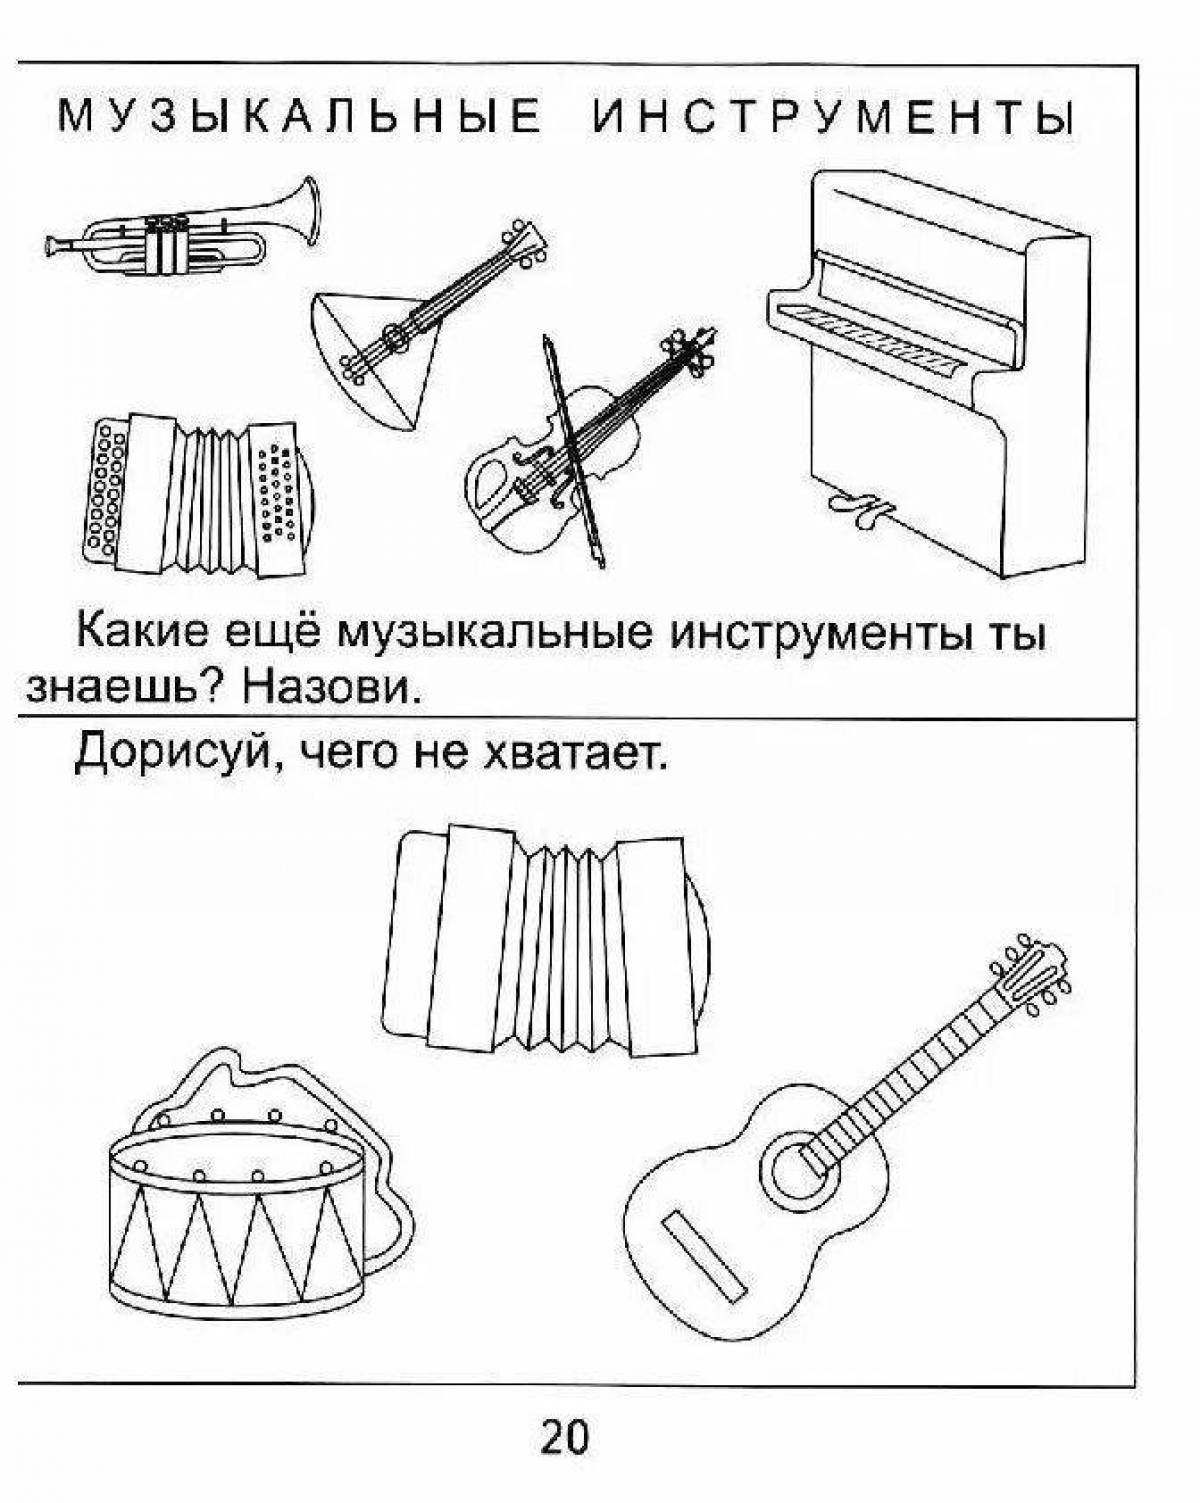 Учим музыкальные инструменты. Музыкальные инструменты задания для детей. Задания по инструментам для дошкольников. Музыкальные инструменты задания для дошкольников. Музыкальные инструменты рисунки.